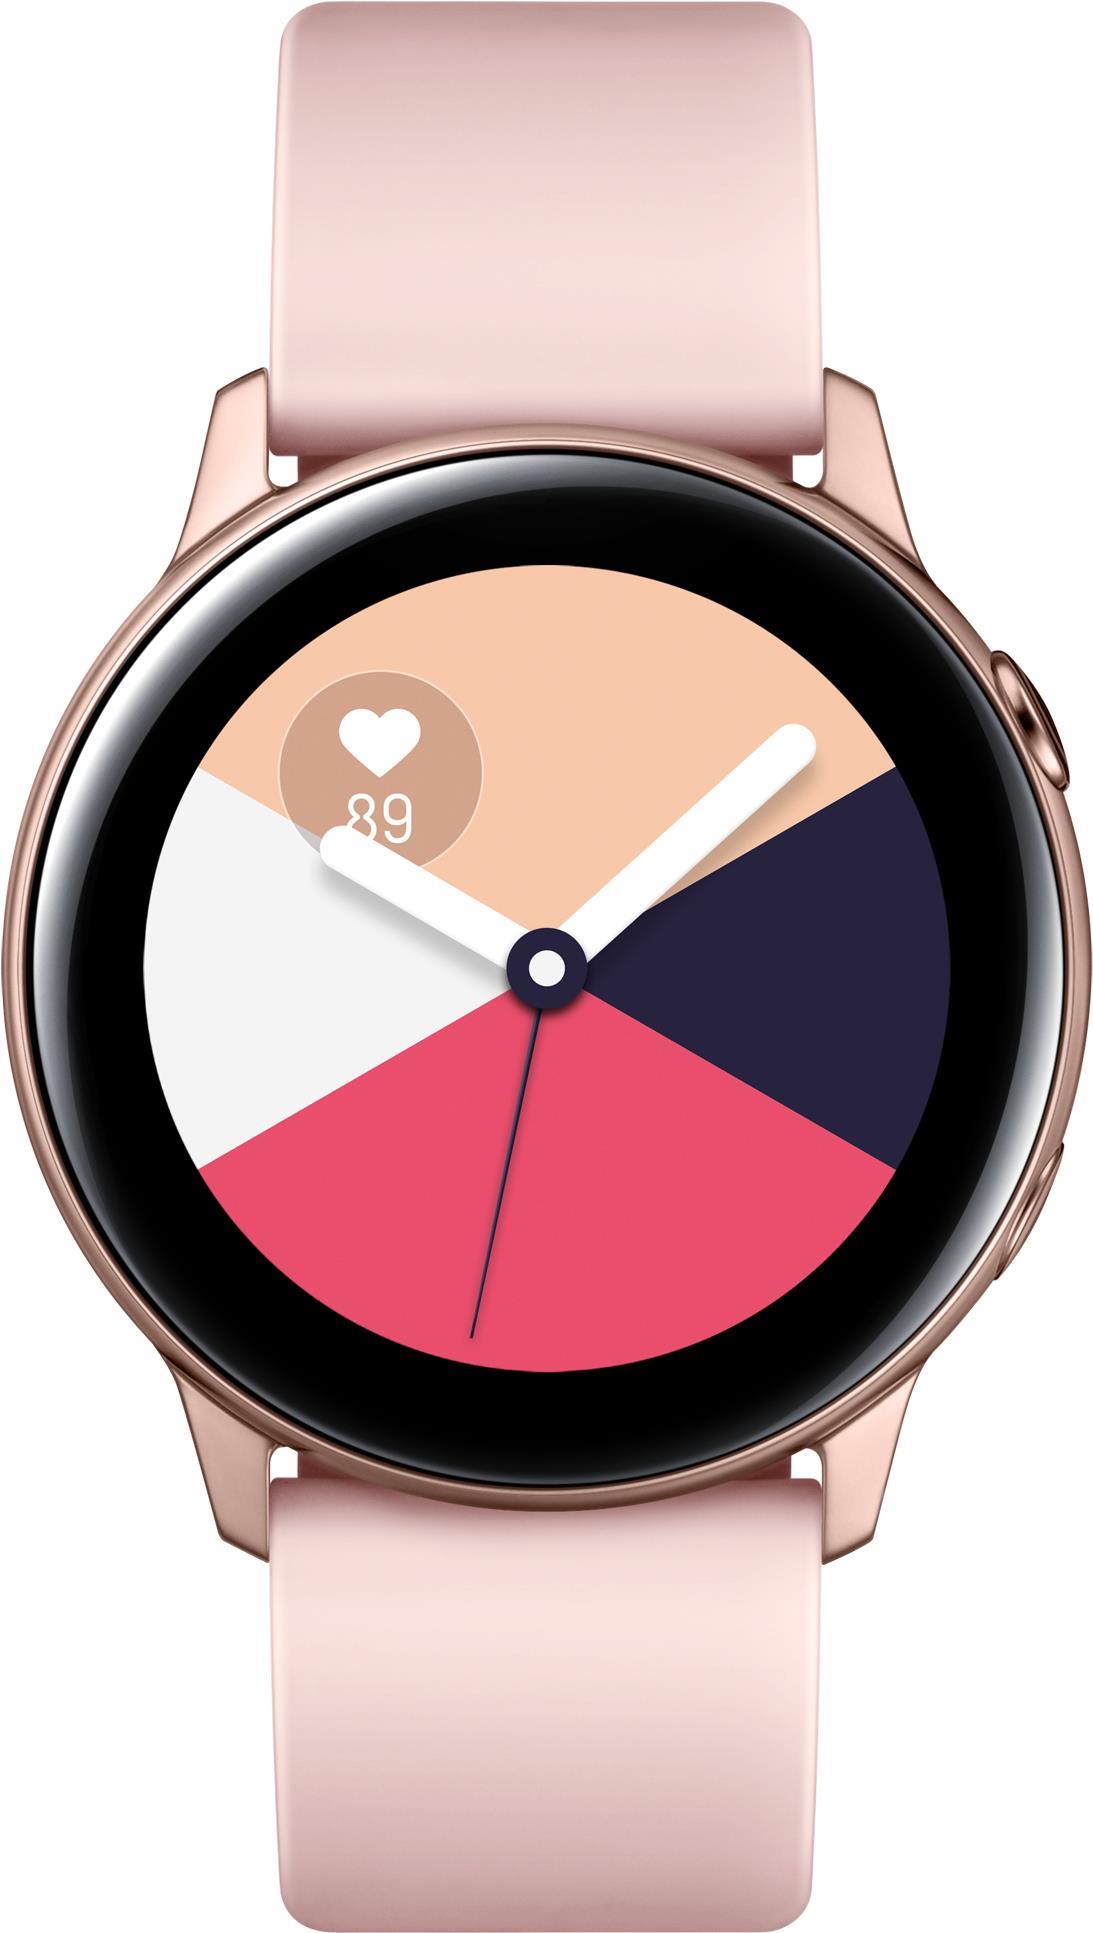 Samsung Galaxy Watch Active - Rotgold - intelligente Uhr mit Band - Flouroelastomer - Anzeige 2.81 cm (1.1